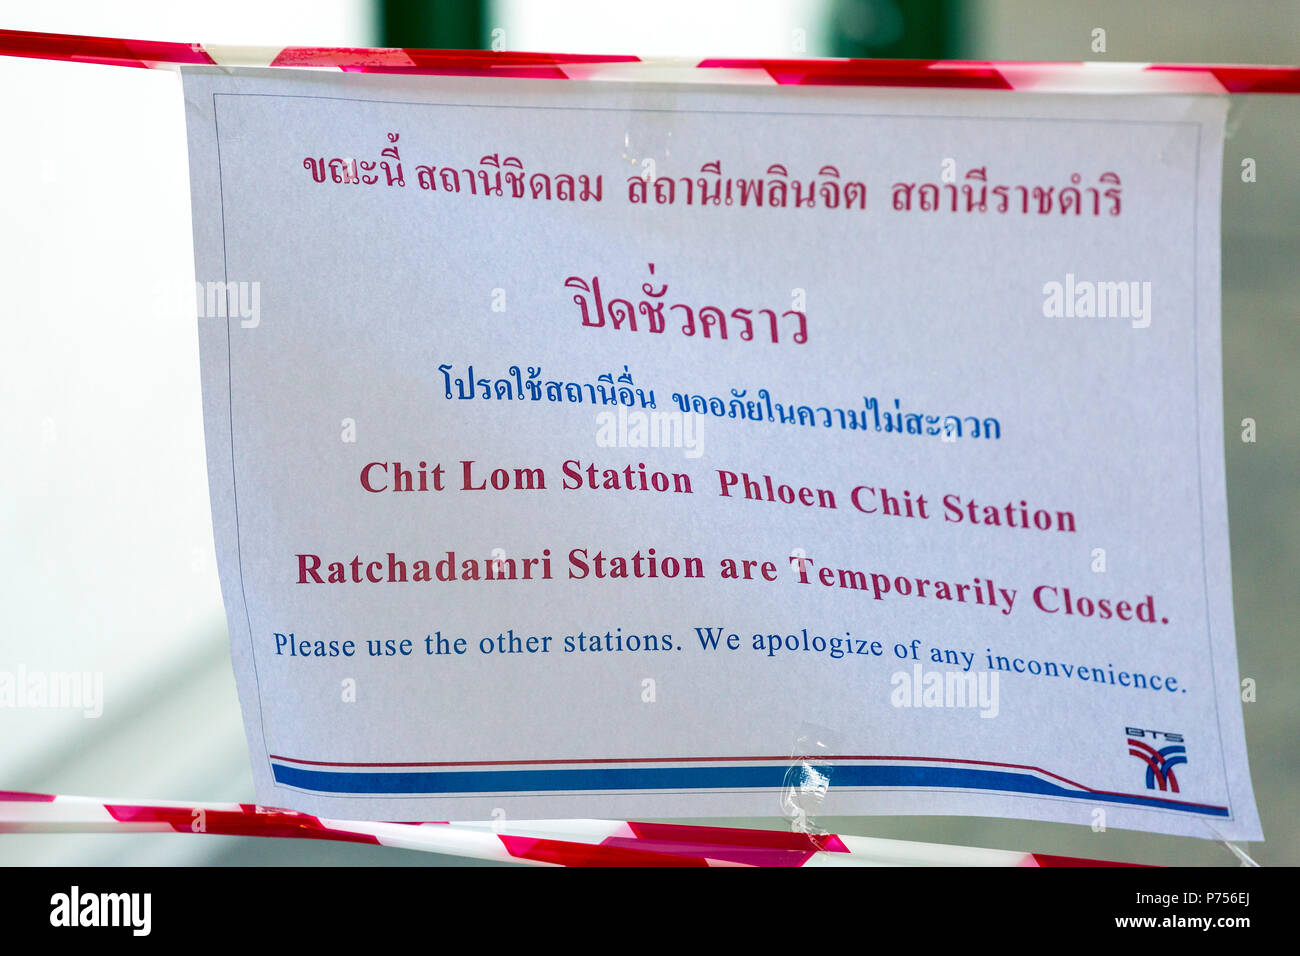 Avis de fermeture de la station de Skytrain Chit beaucoup au cours de coup d'État militaire, Bangkok, Thaïlande Banque D'Images